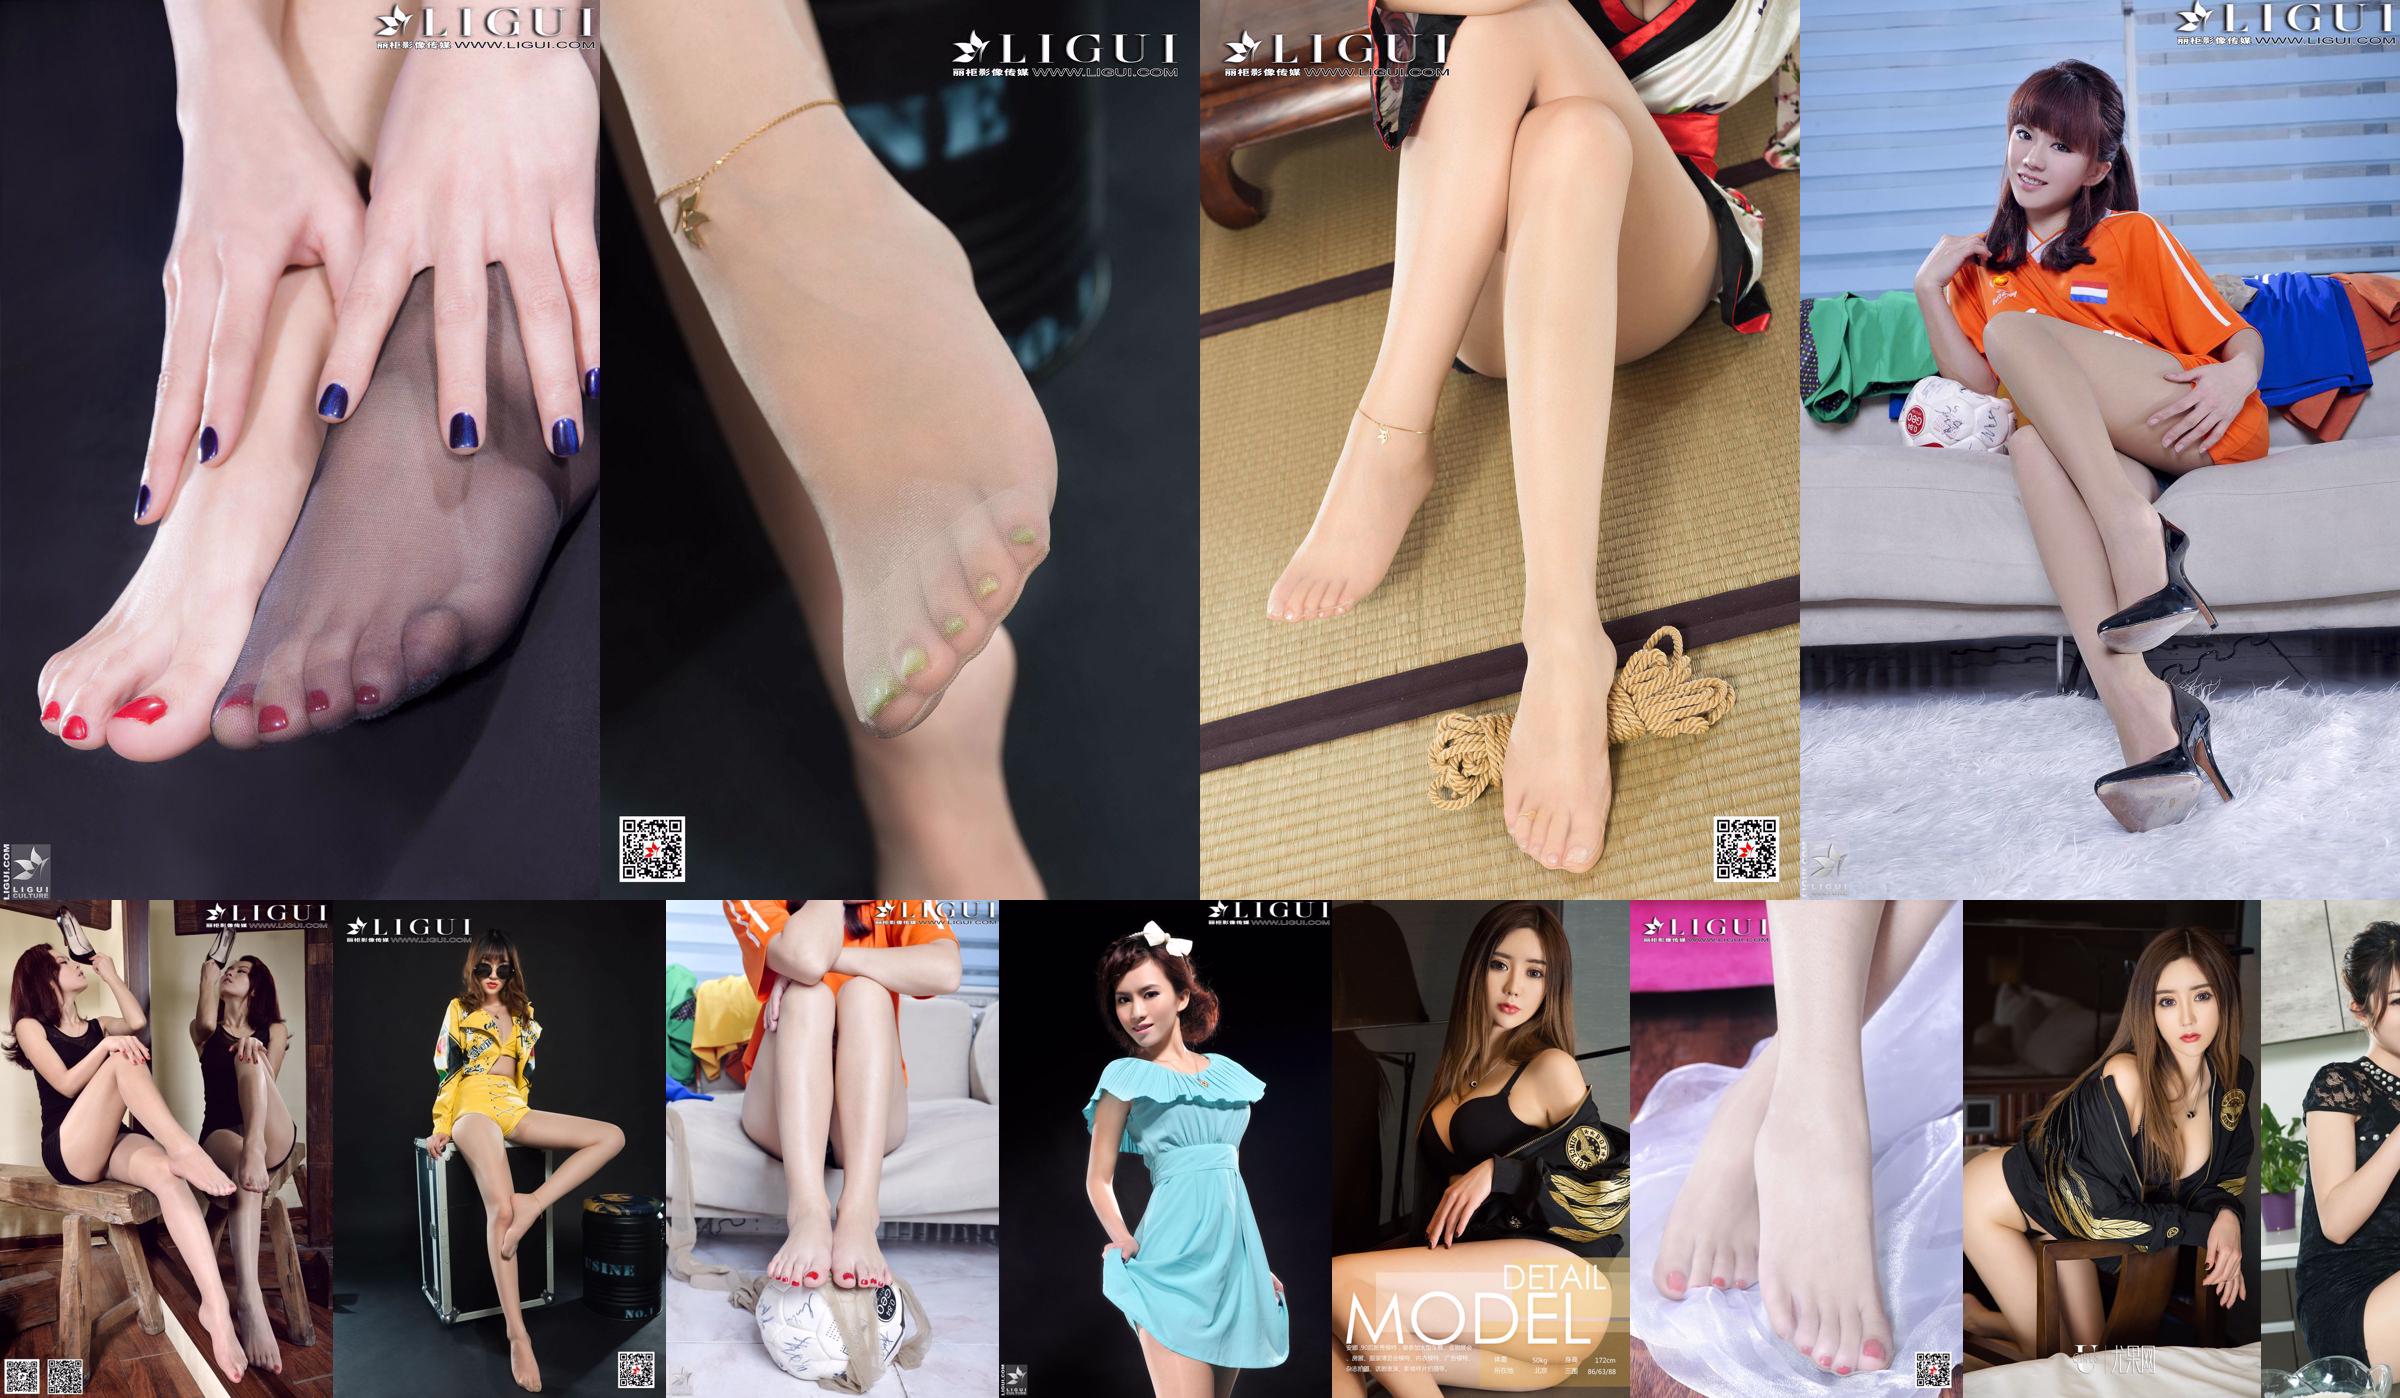 [丽 柜 LiGui] Model Anna's "Temptation of Meat Stockings and Feet" Mooie benen en Jade Voeten No.b7c655 Pagina 1